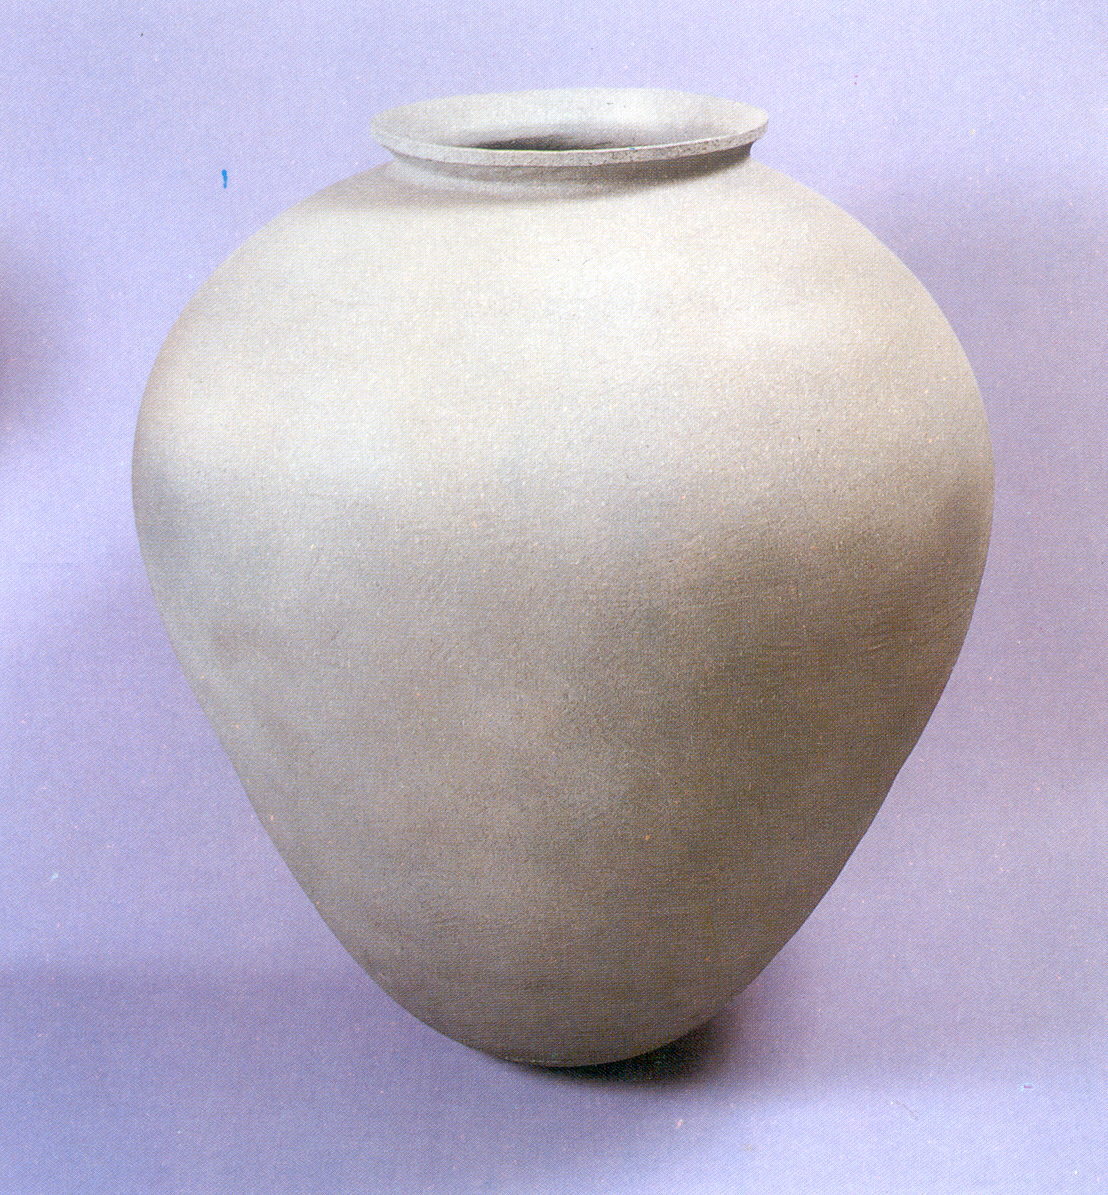 큰항아리(Large Jar) 의 이미지